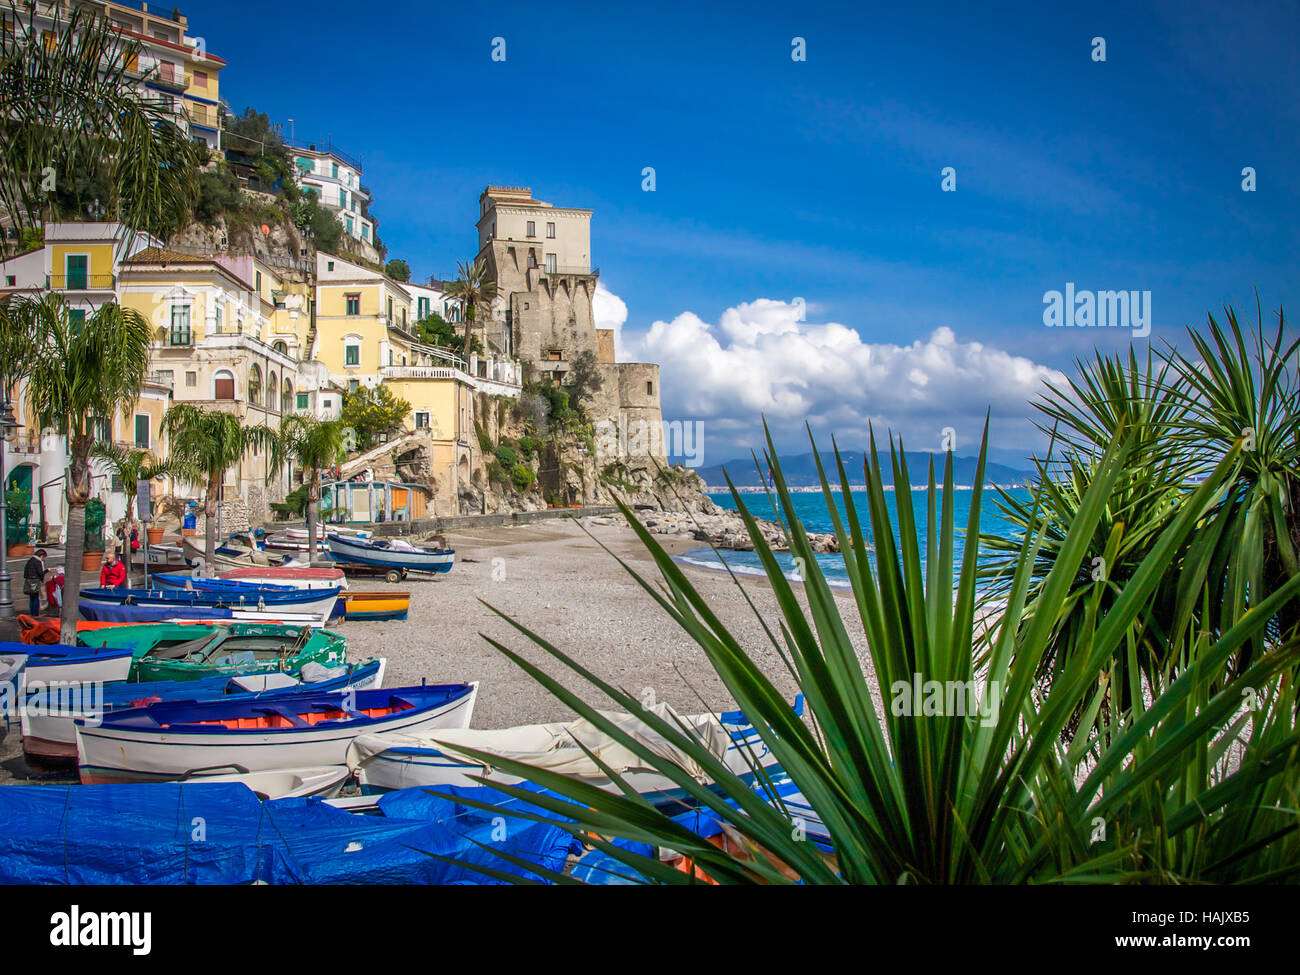 Il pittoresco villaggio di Cetara, Costiera Amalfitana, Italia. Foto Stock